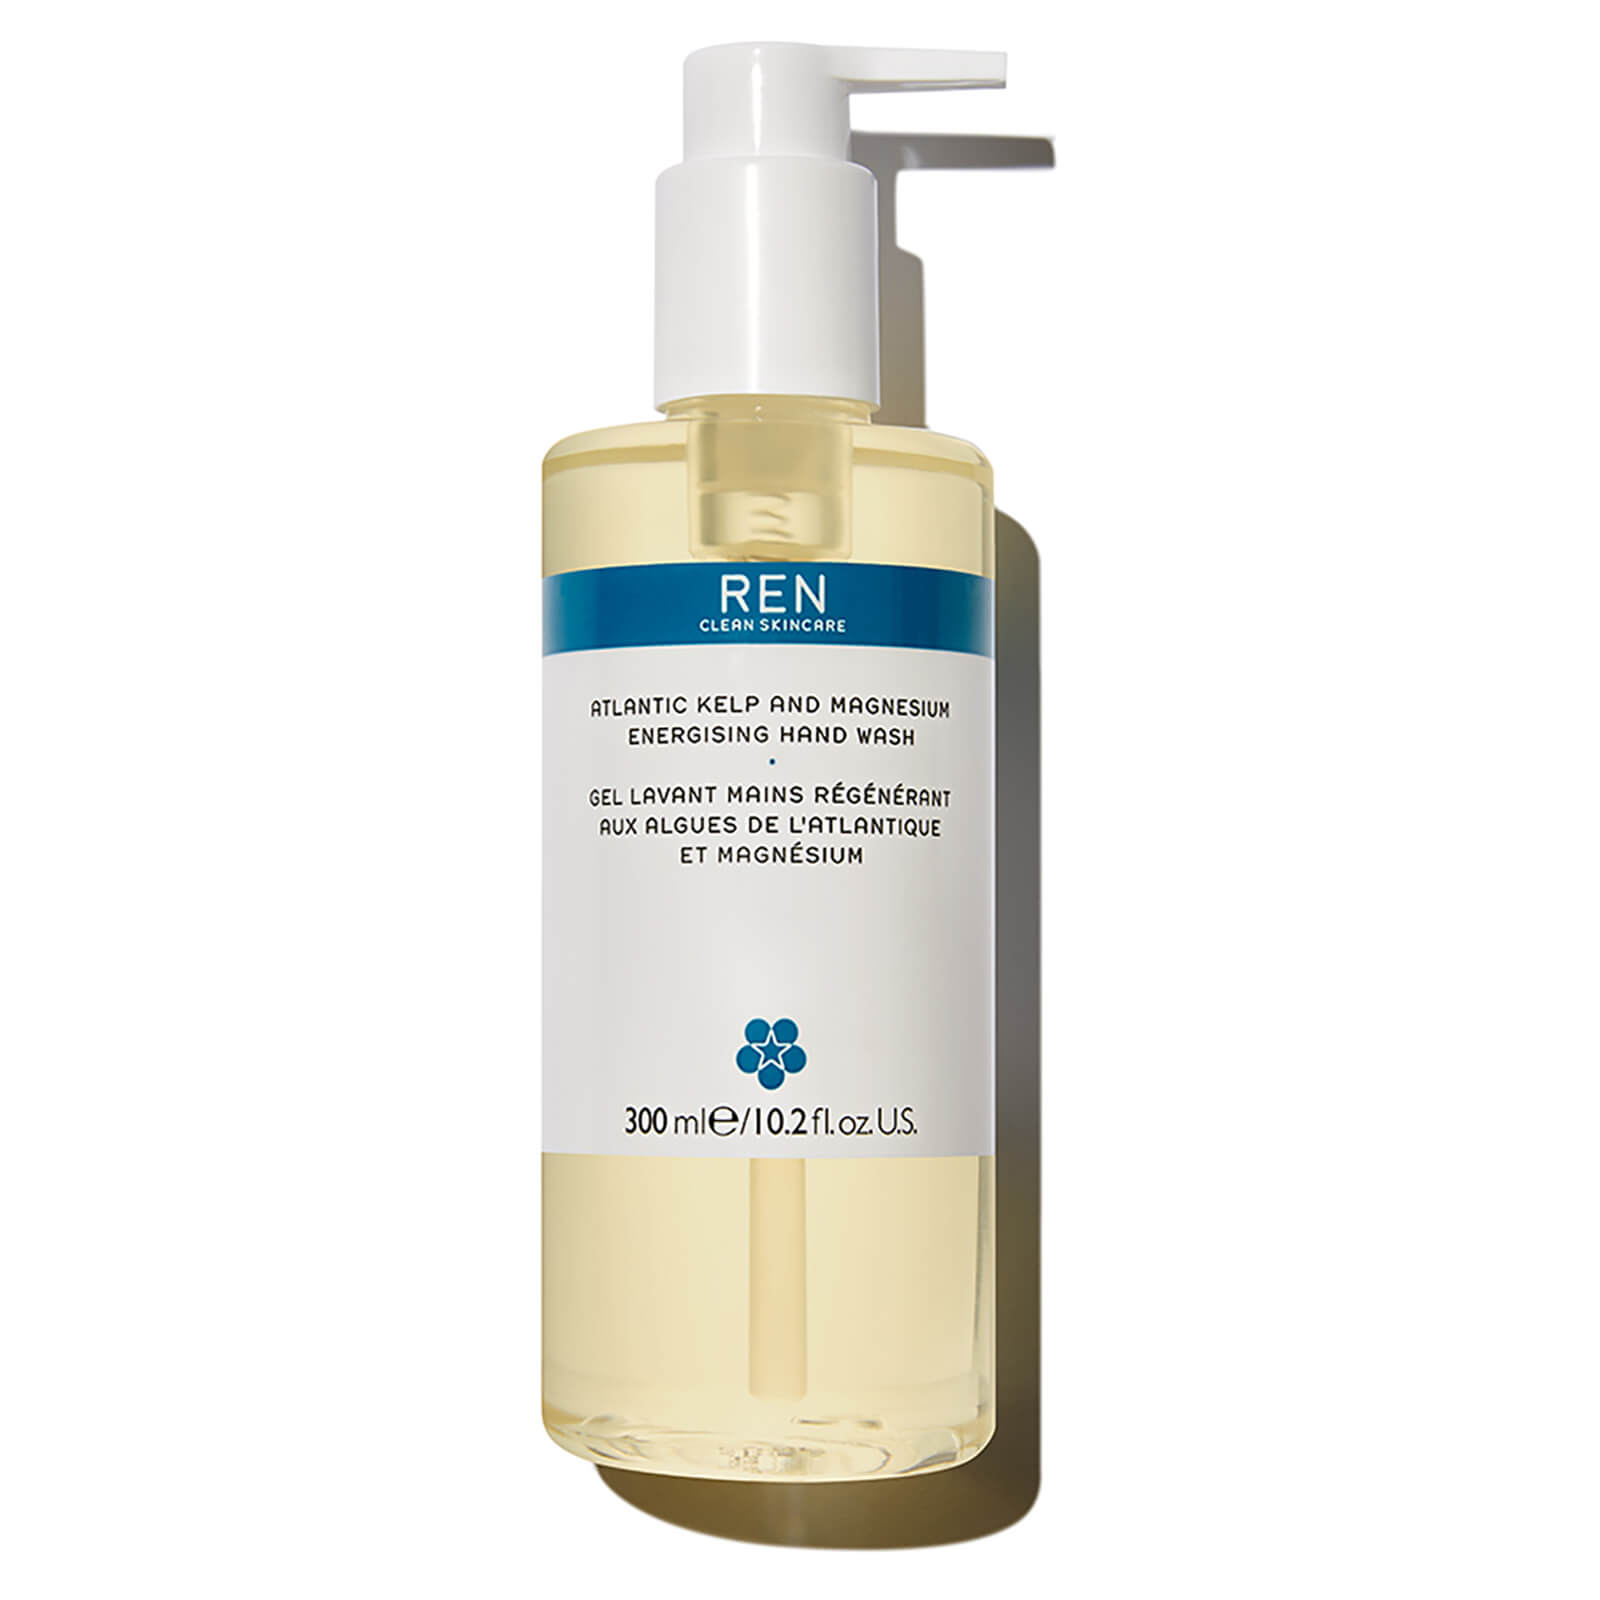 Ren Atlantic Kelp and Magnesium Energising Hand Wash